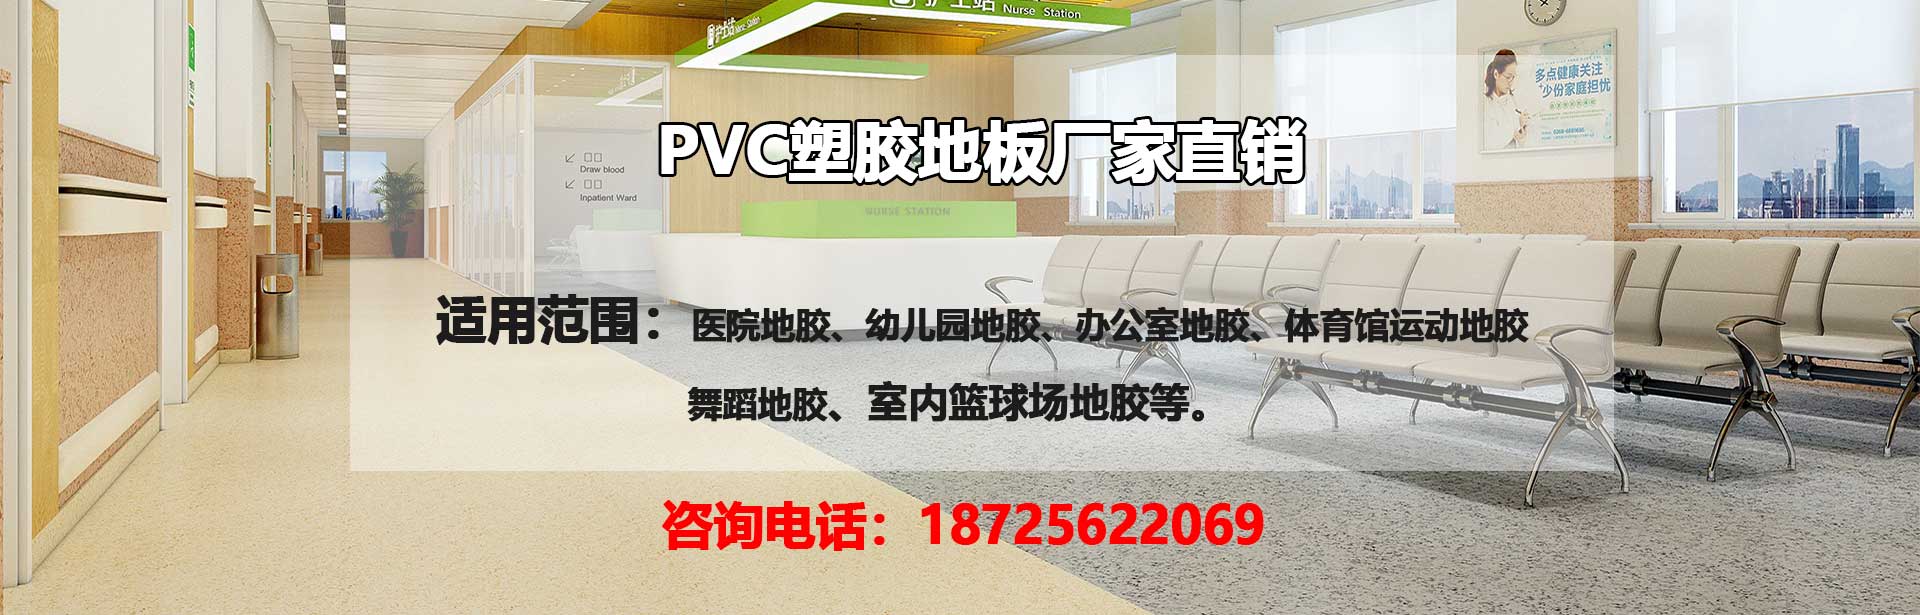 天水PVC塑胶地板